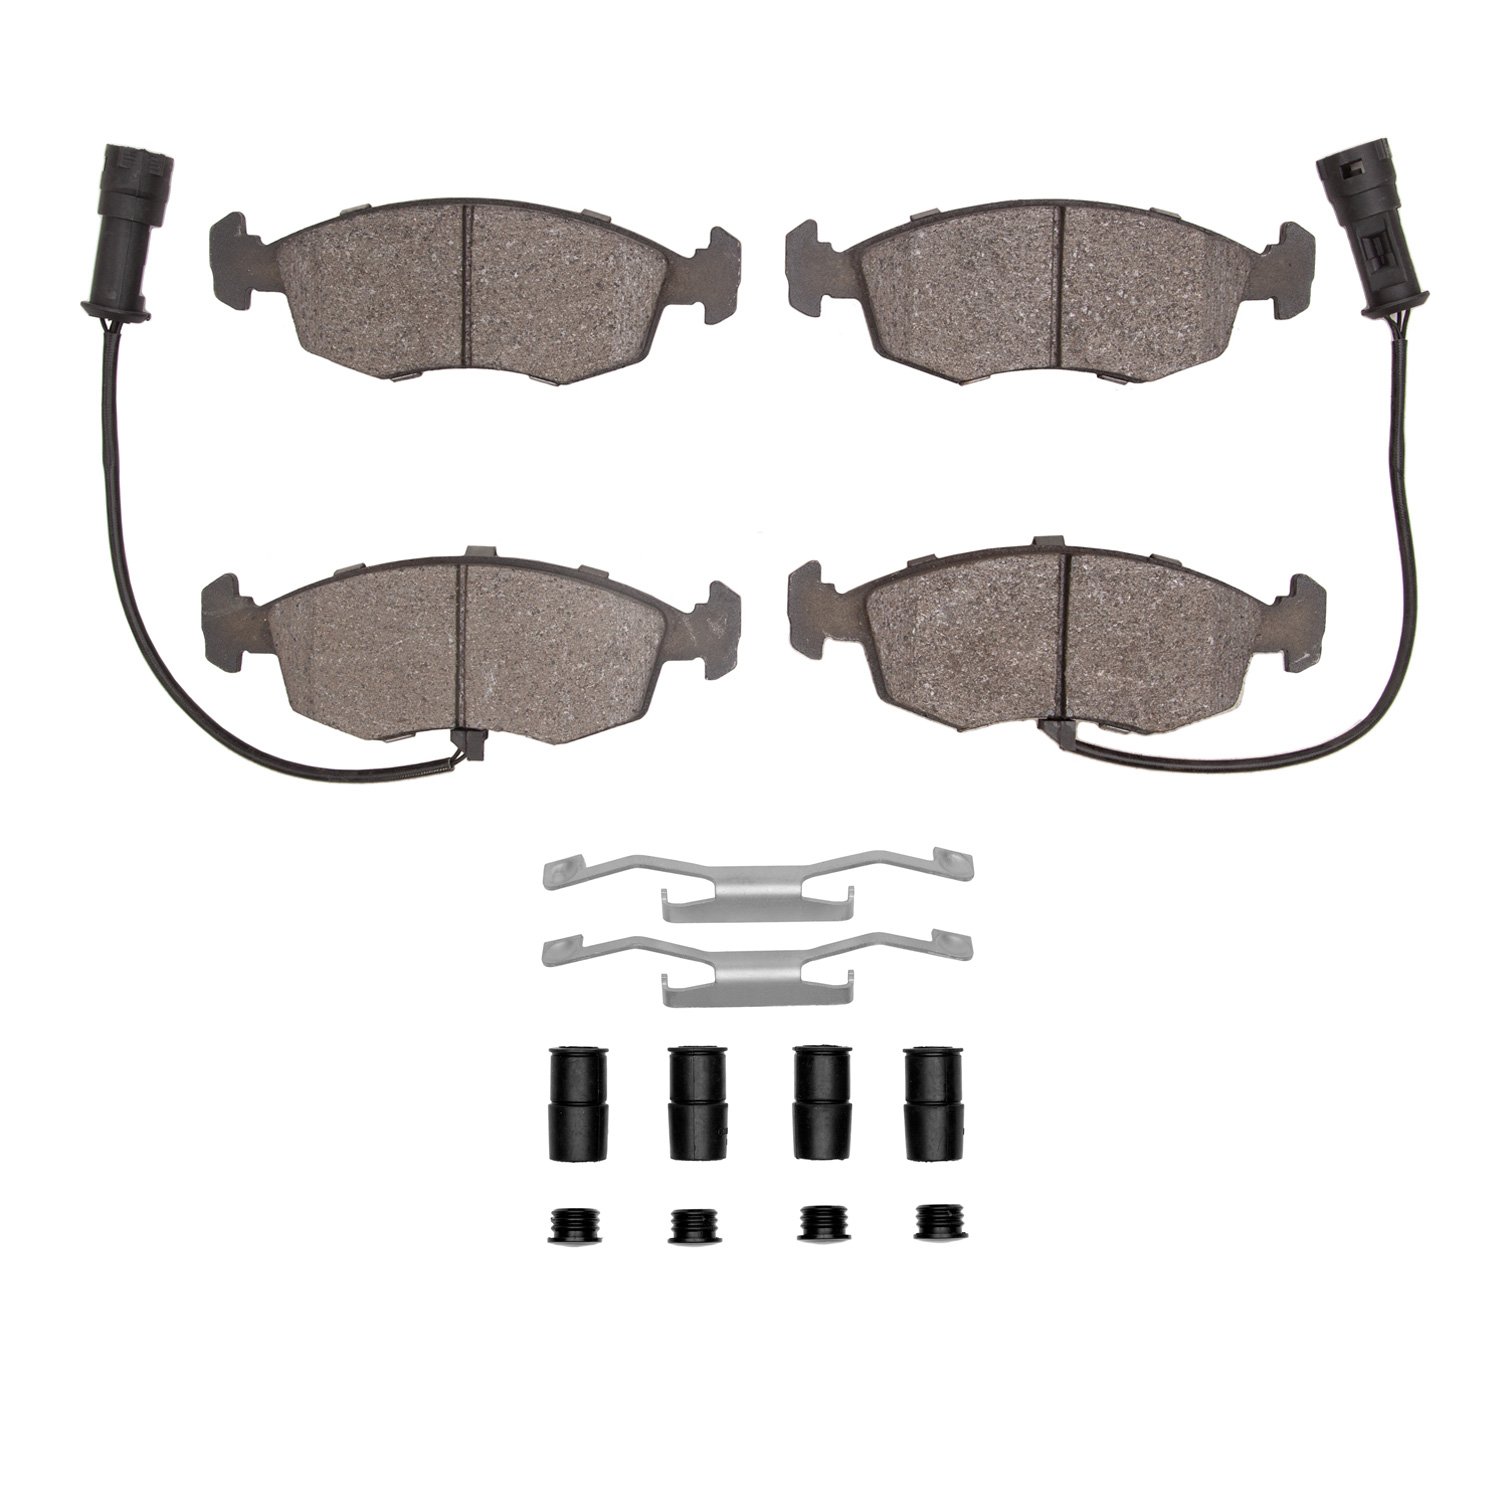 Semi-Metallic Brake Pads & Hardware Kit, 1985-1989 Merkur, Position: Front